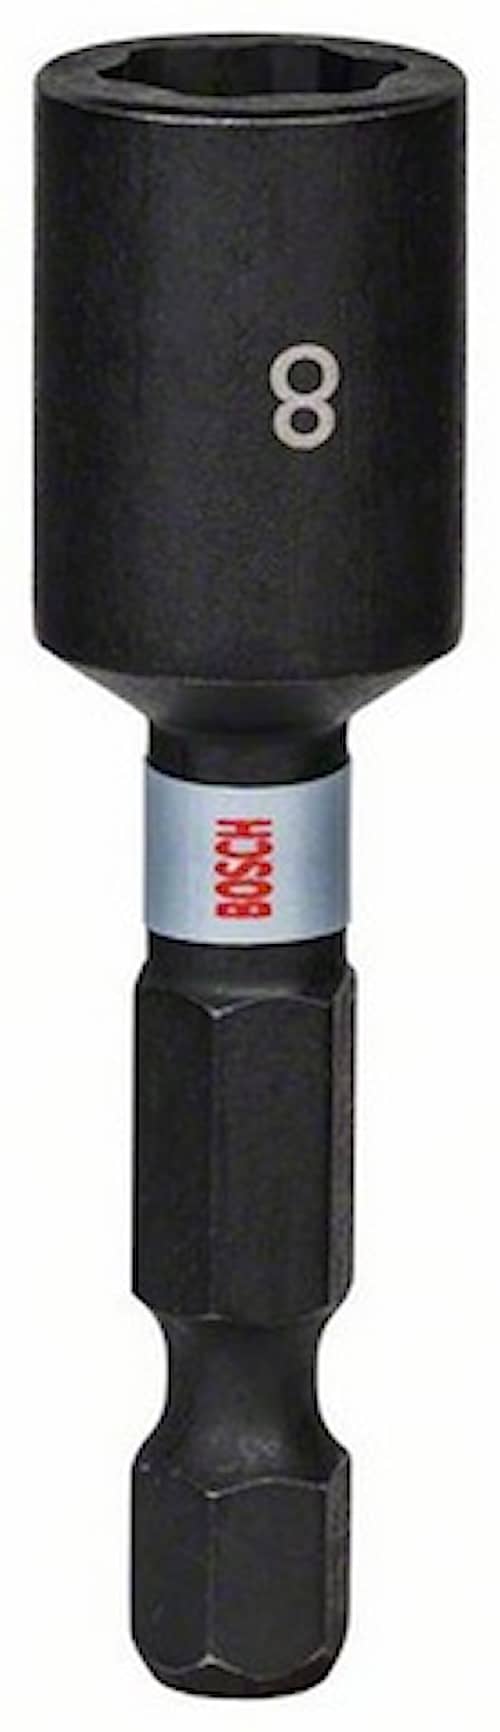 Bosch Impact Control pipenøkkel, 1 stk.